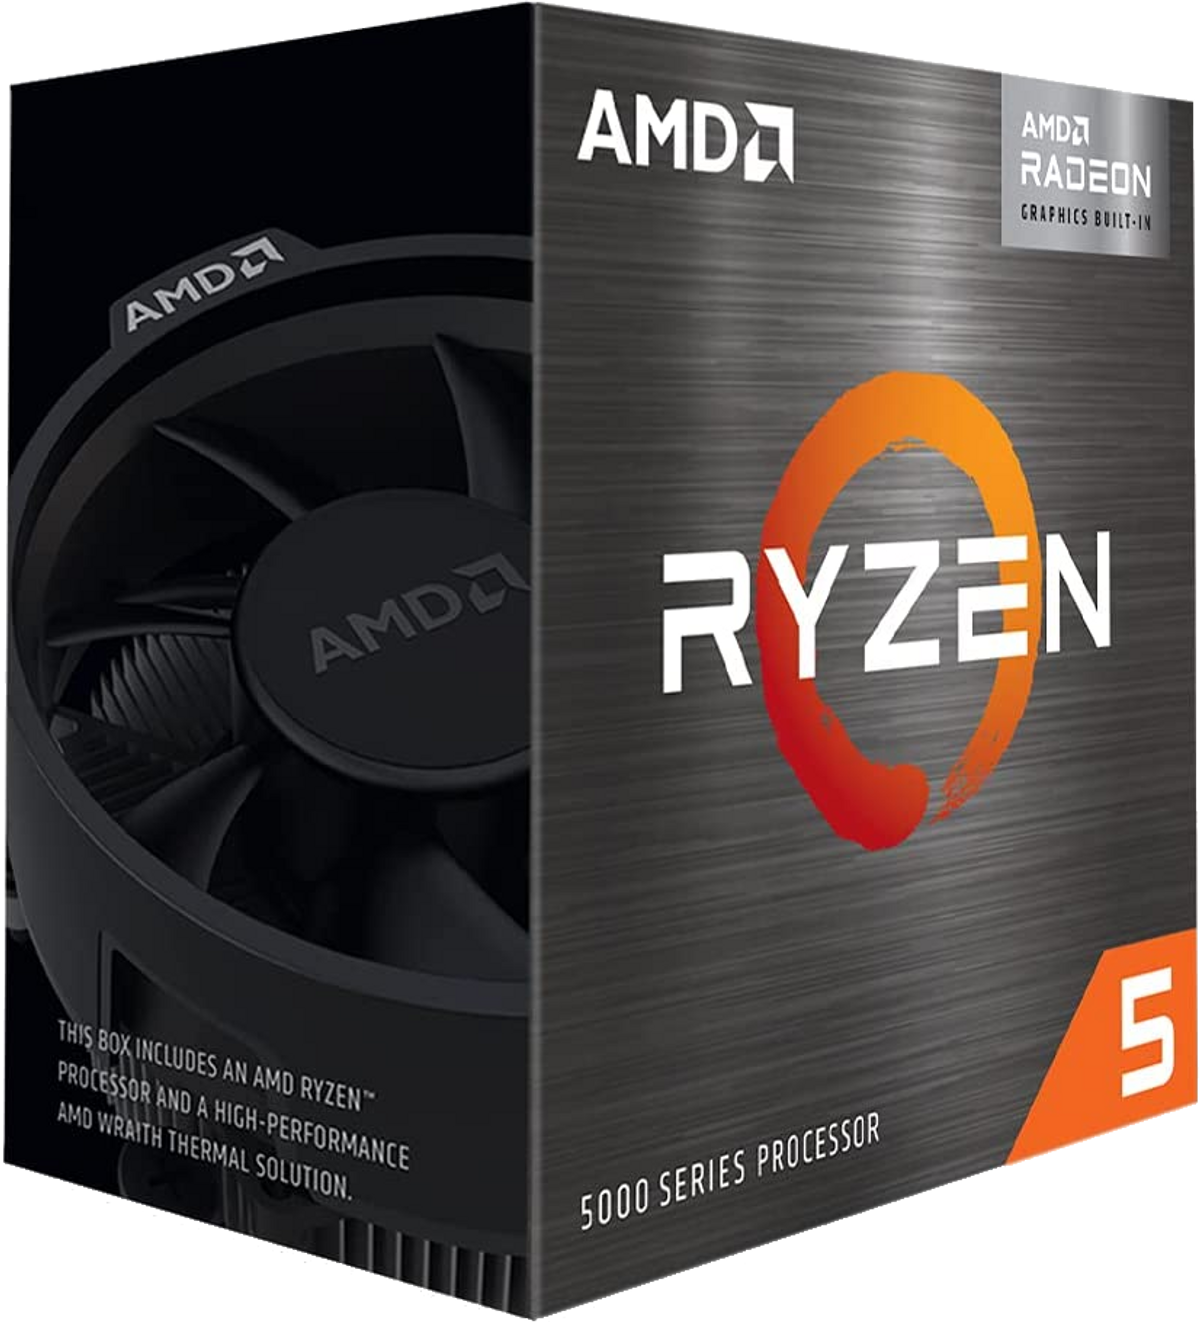 AMD 5600G Prozessor mit Mehrfarbig Boxed-Kühler